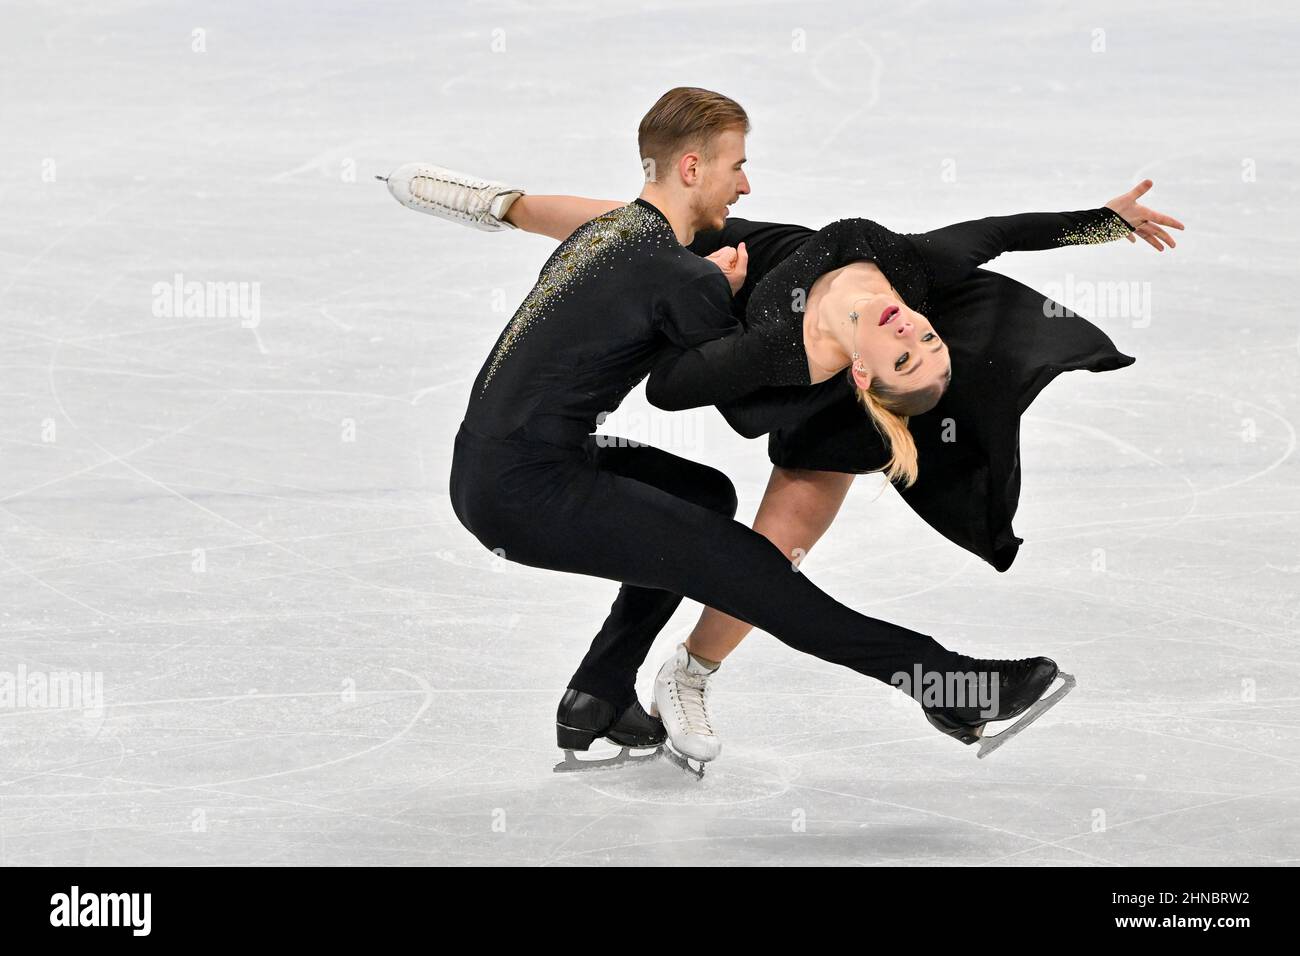 BEIJING, CHINA - FEBRUARY 14: Natalie Taschlerova and Filip Taschler of Team Czech Republic skate during the Ice Dance Free Dance on day ten of the Be Stock Photo